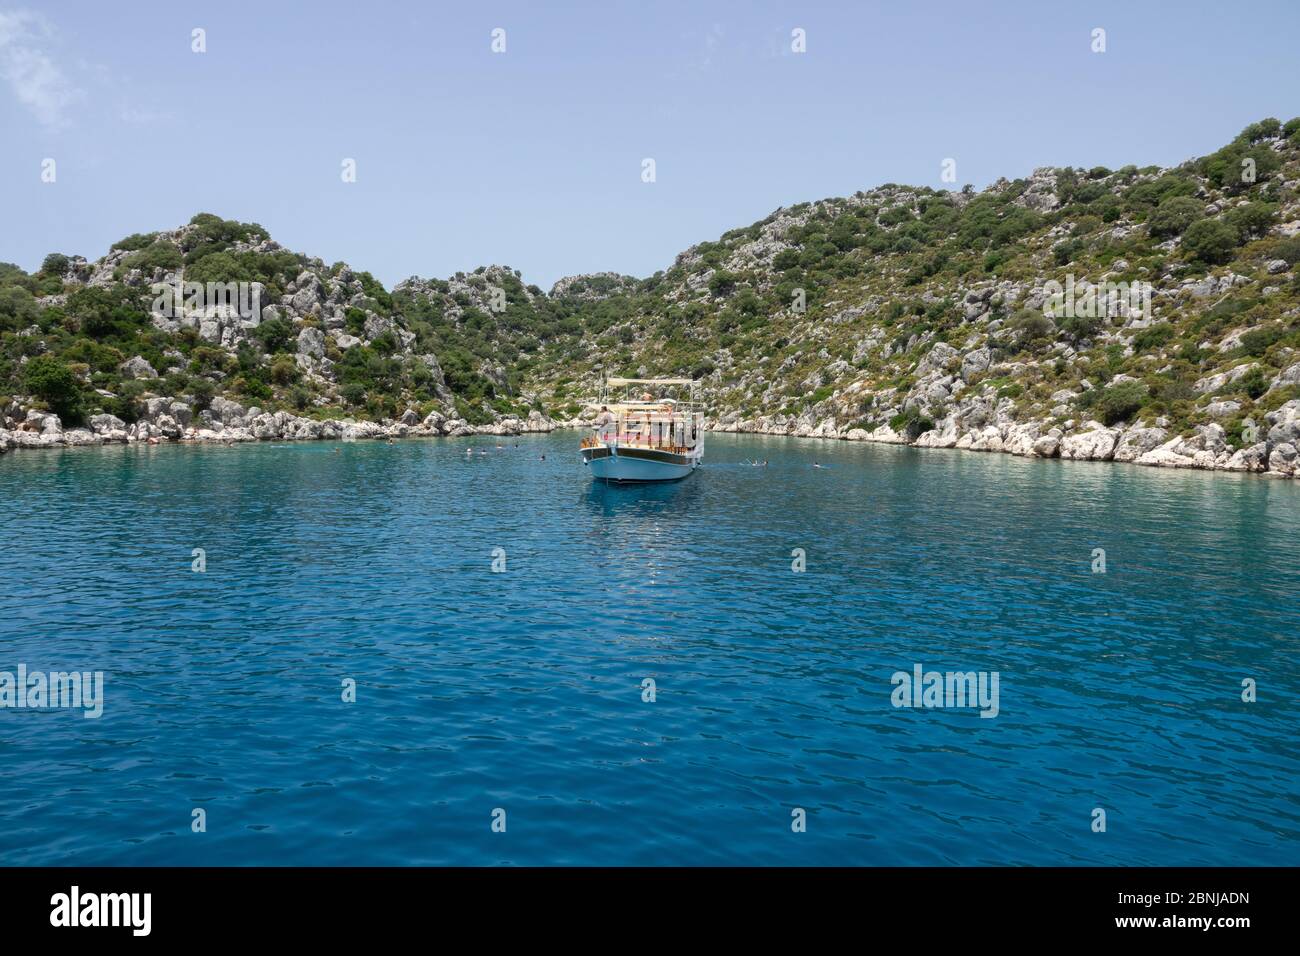 Kalekoy, Demre, Turchia - 03 giugno 2019: Turisti in piscina vicino al yacht da diporto. La costa rocciosa dell'isola di Kekova nel Mar Mediterraneo Foto Stock